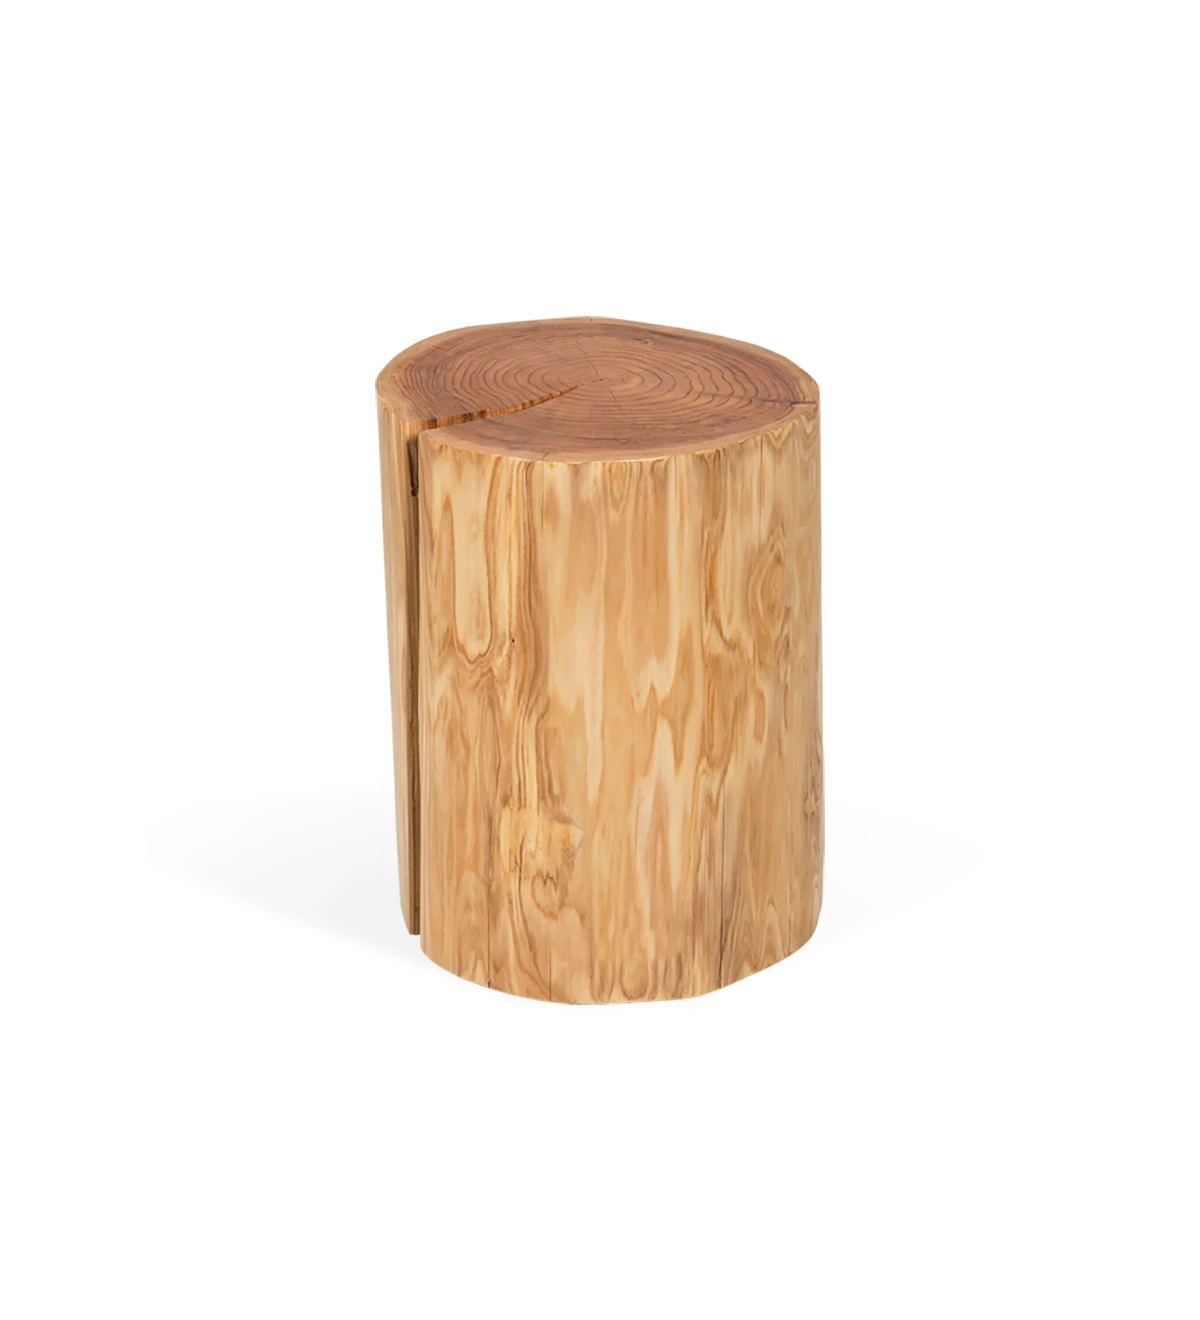 Mesa de apoio tronco em madeira natural de criptoméria, Ø 35 a 45 cm.